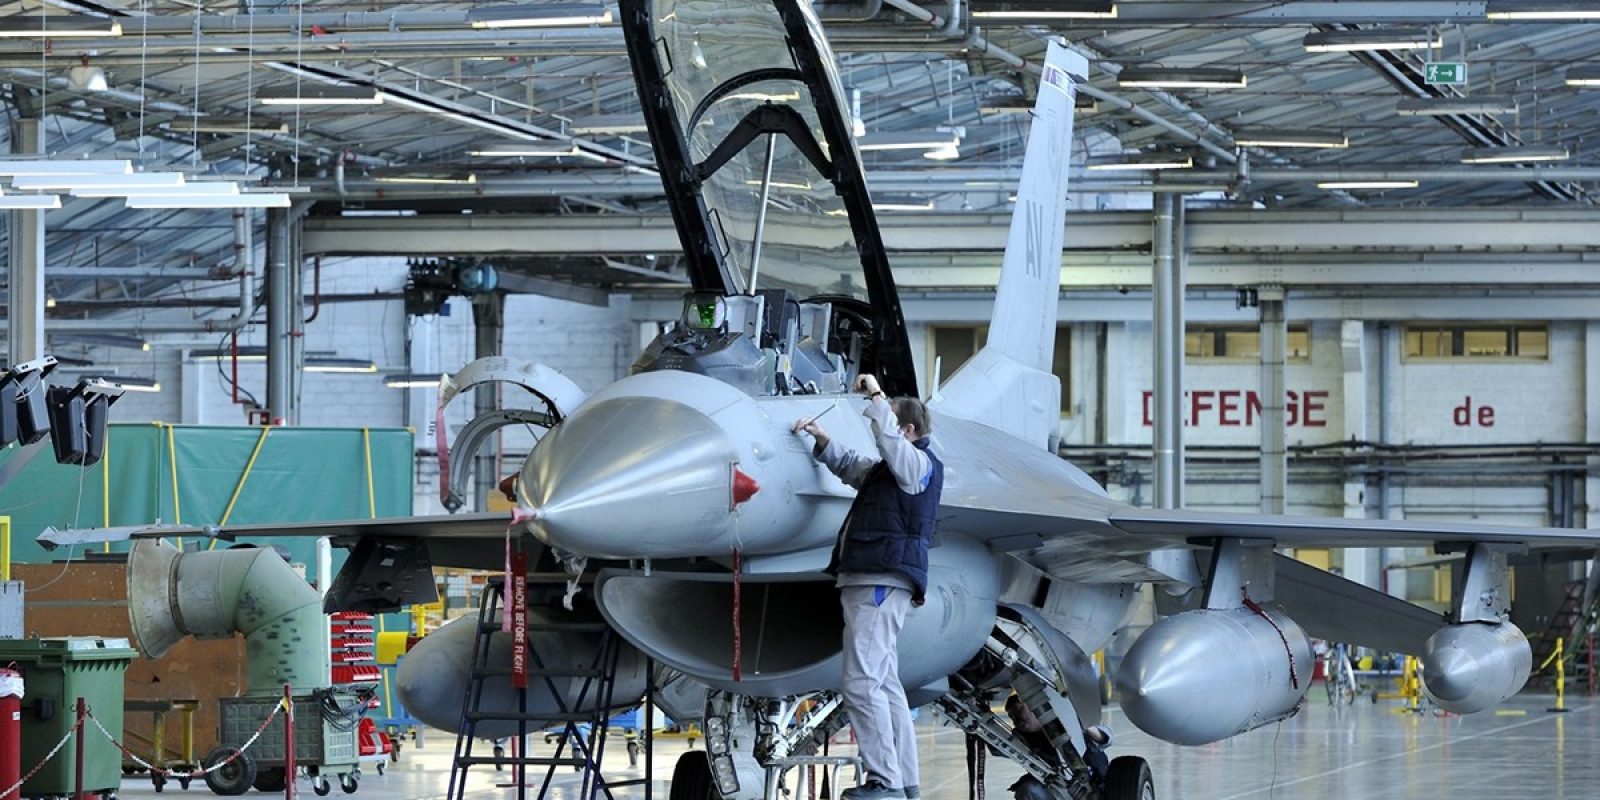 SABCA est très fière d’être le seul fournisseur européen de services MRO-U au niveau « depot level » pour les F-16 de l’US Air Force. Un F-16DG du 31 Fighter Wing d’Aviano est ici photographié en travaux dans les hangars carolorégiens. (Photo SABCA)